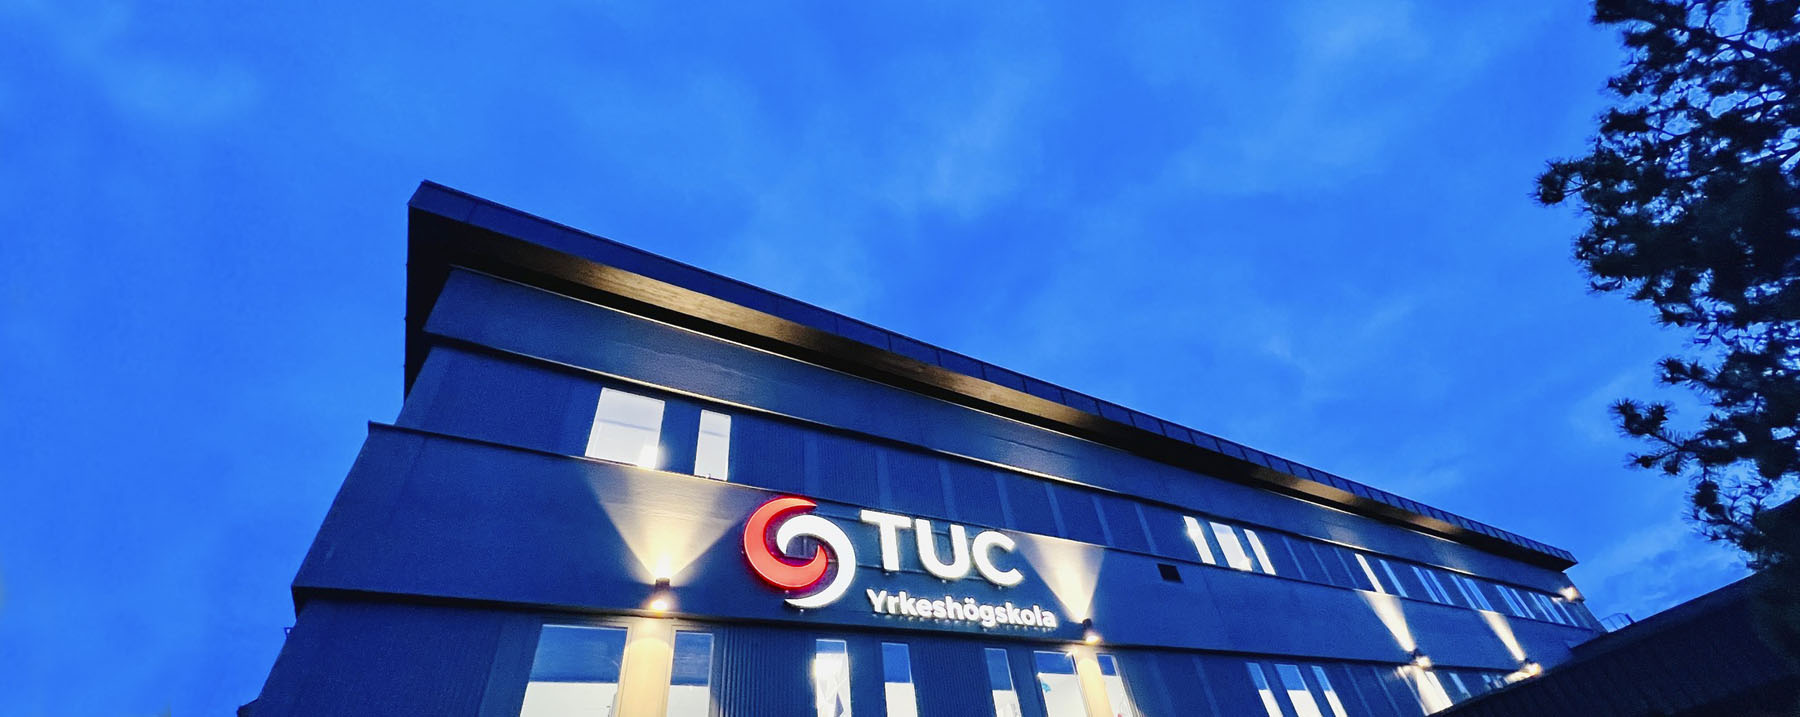 Välkommen TUC och Plushögskolan i Linköping